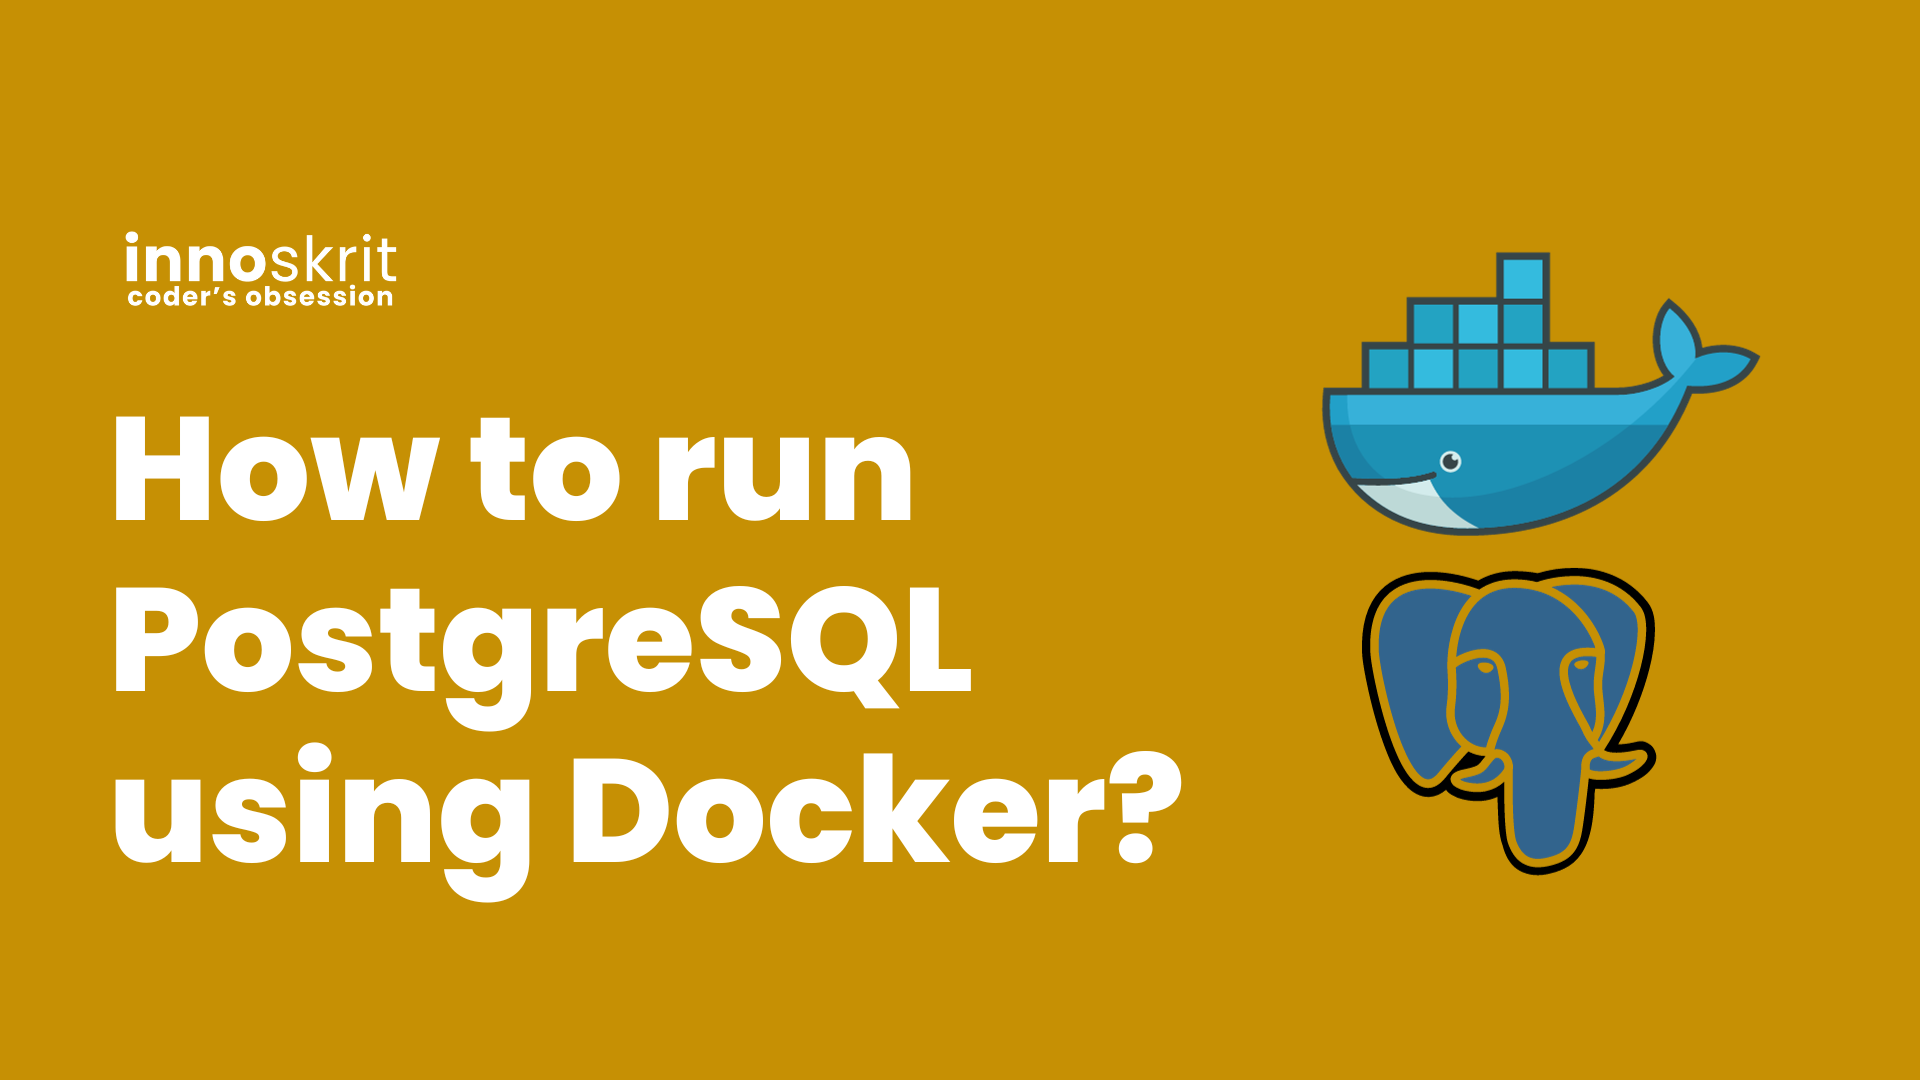 How to run PostgreSQL using Docker?